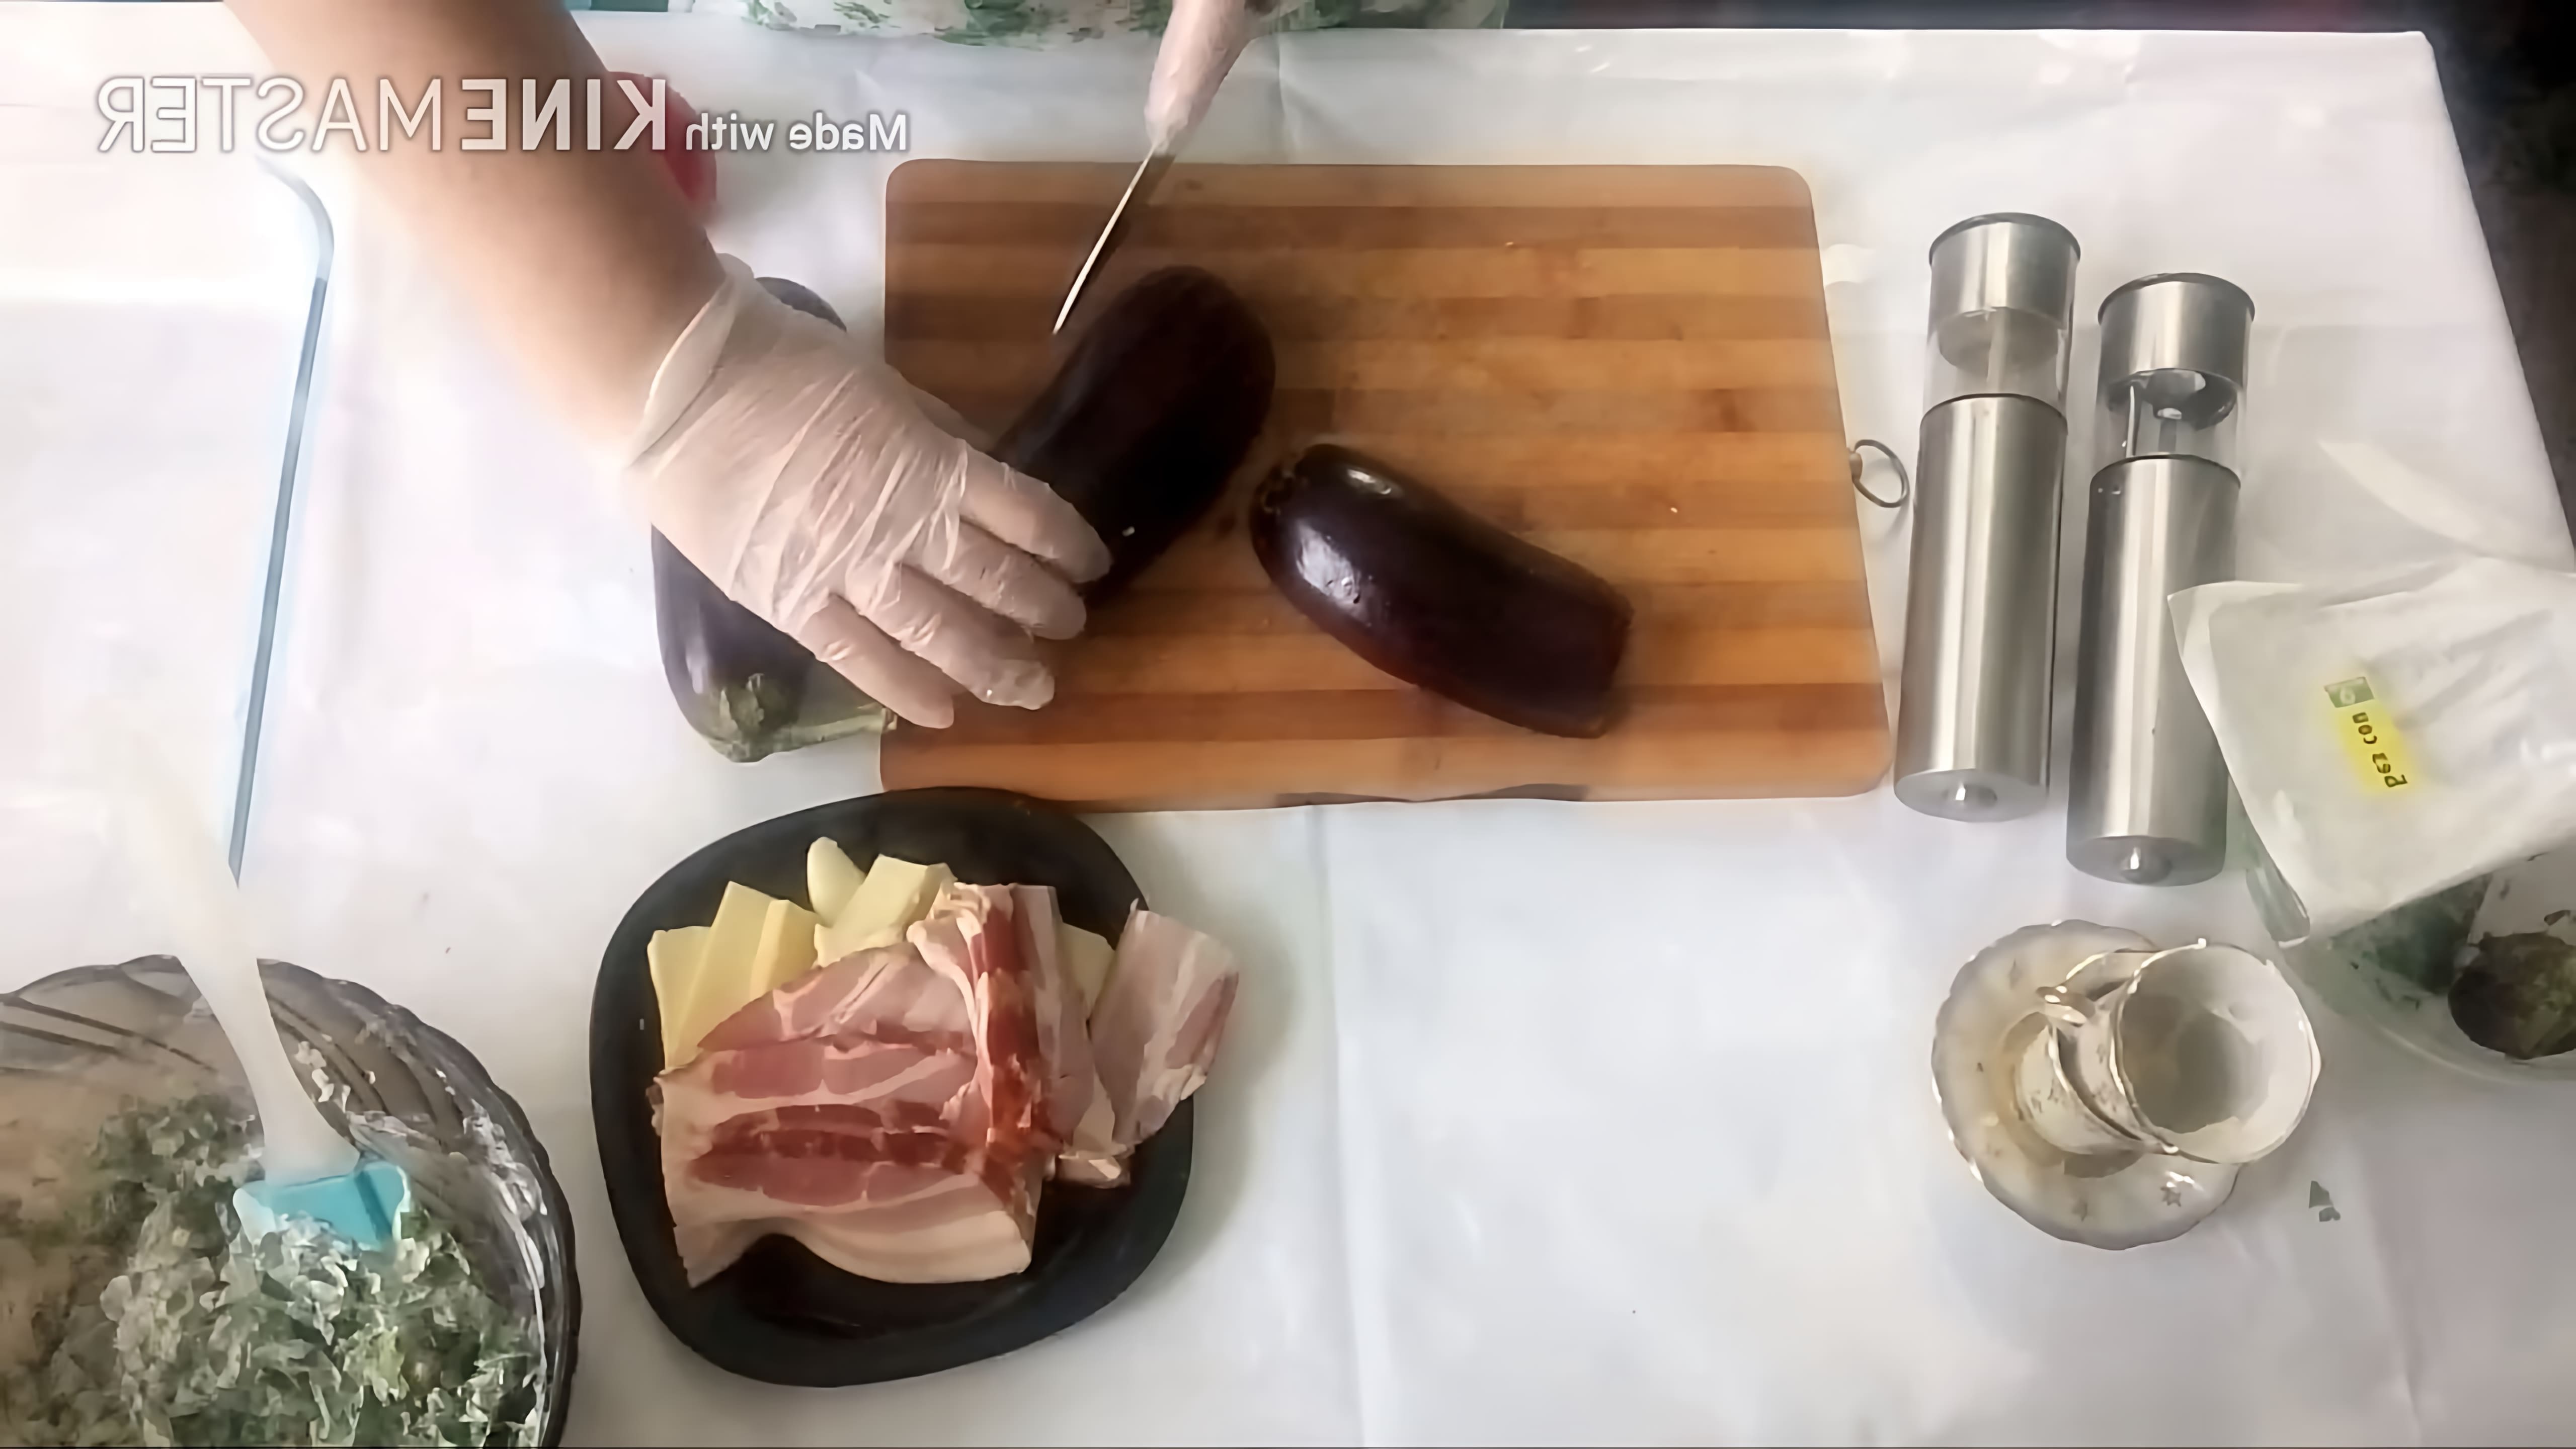 В данном видео демонстрируется процесс приготовления блюда "Баклажаны Жар-птица"